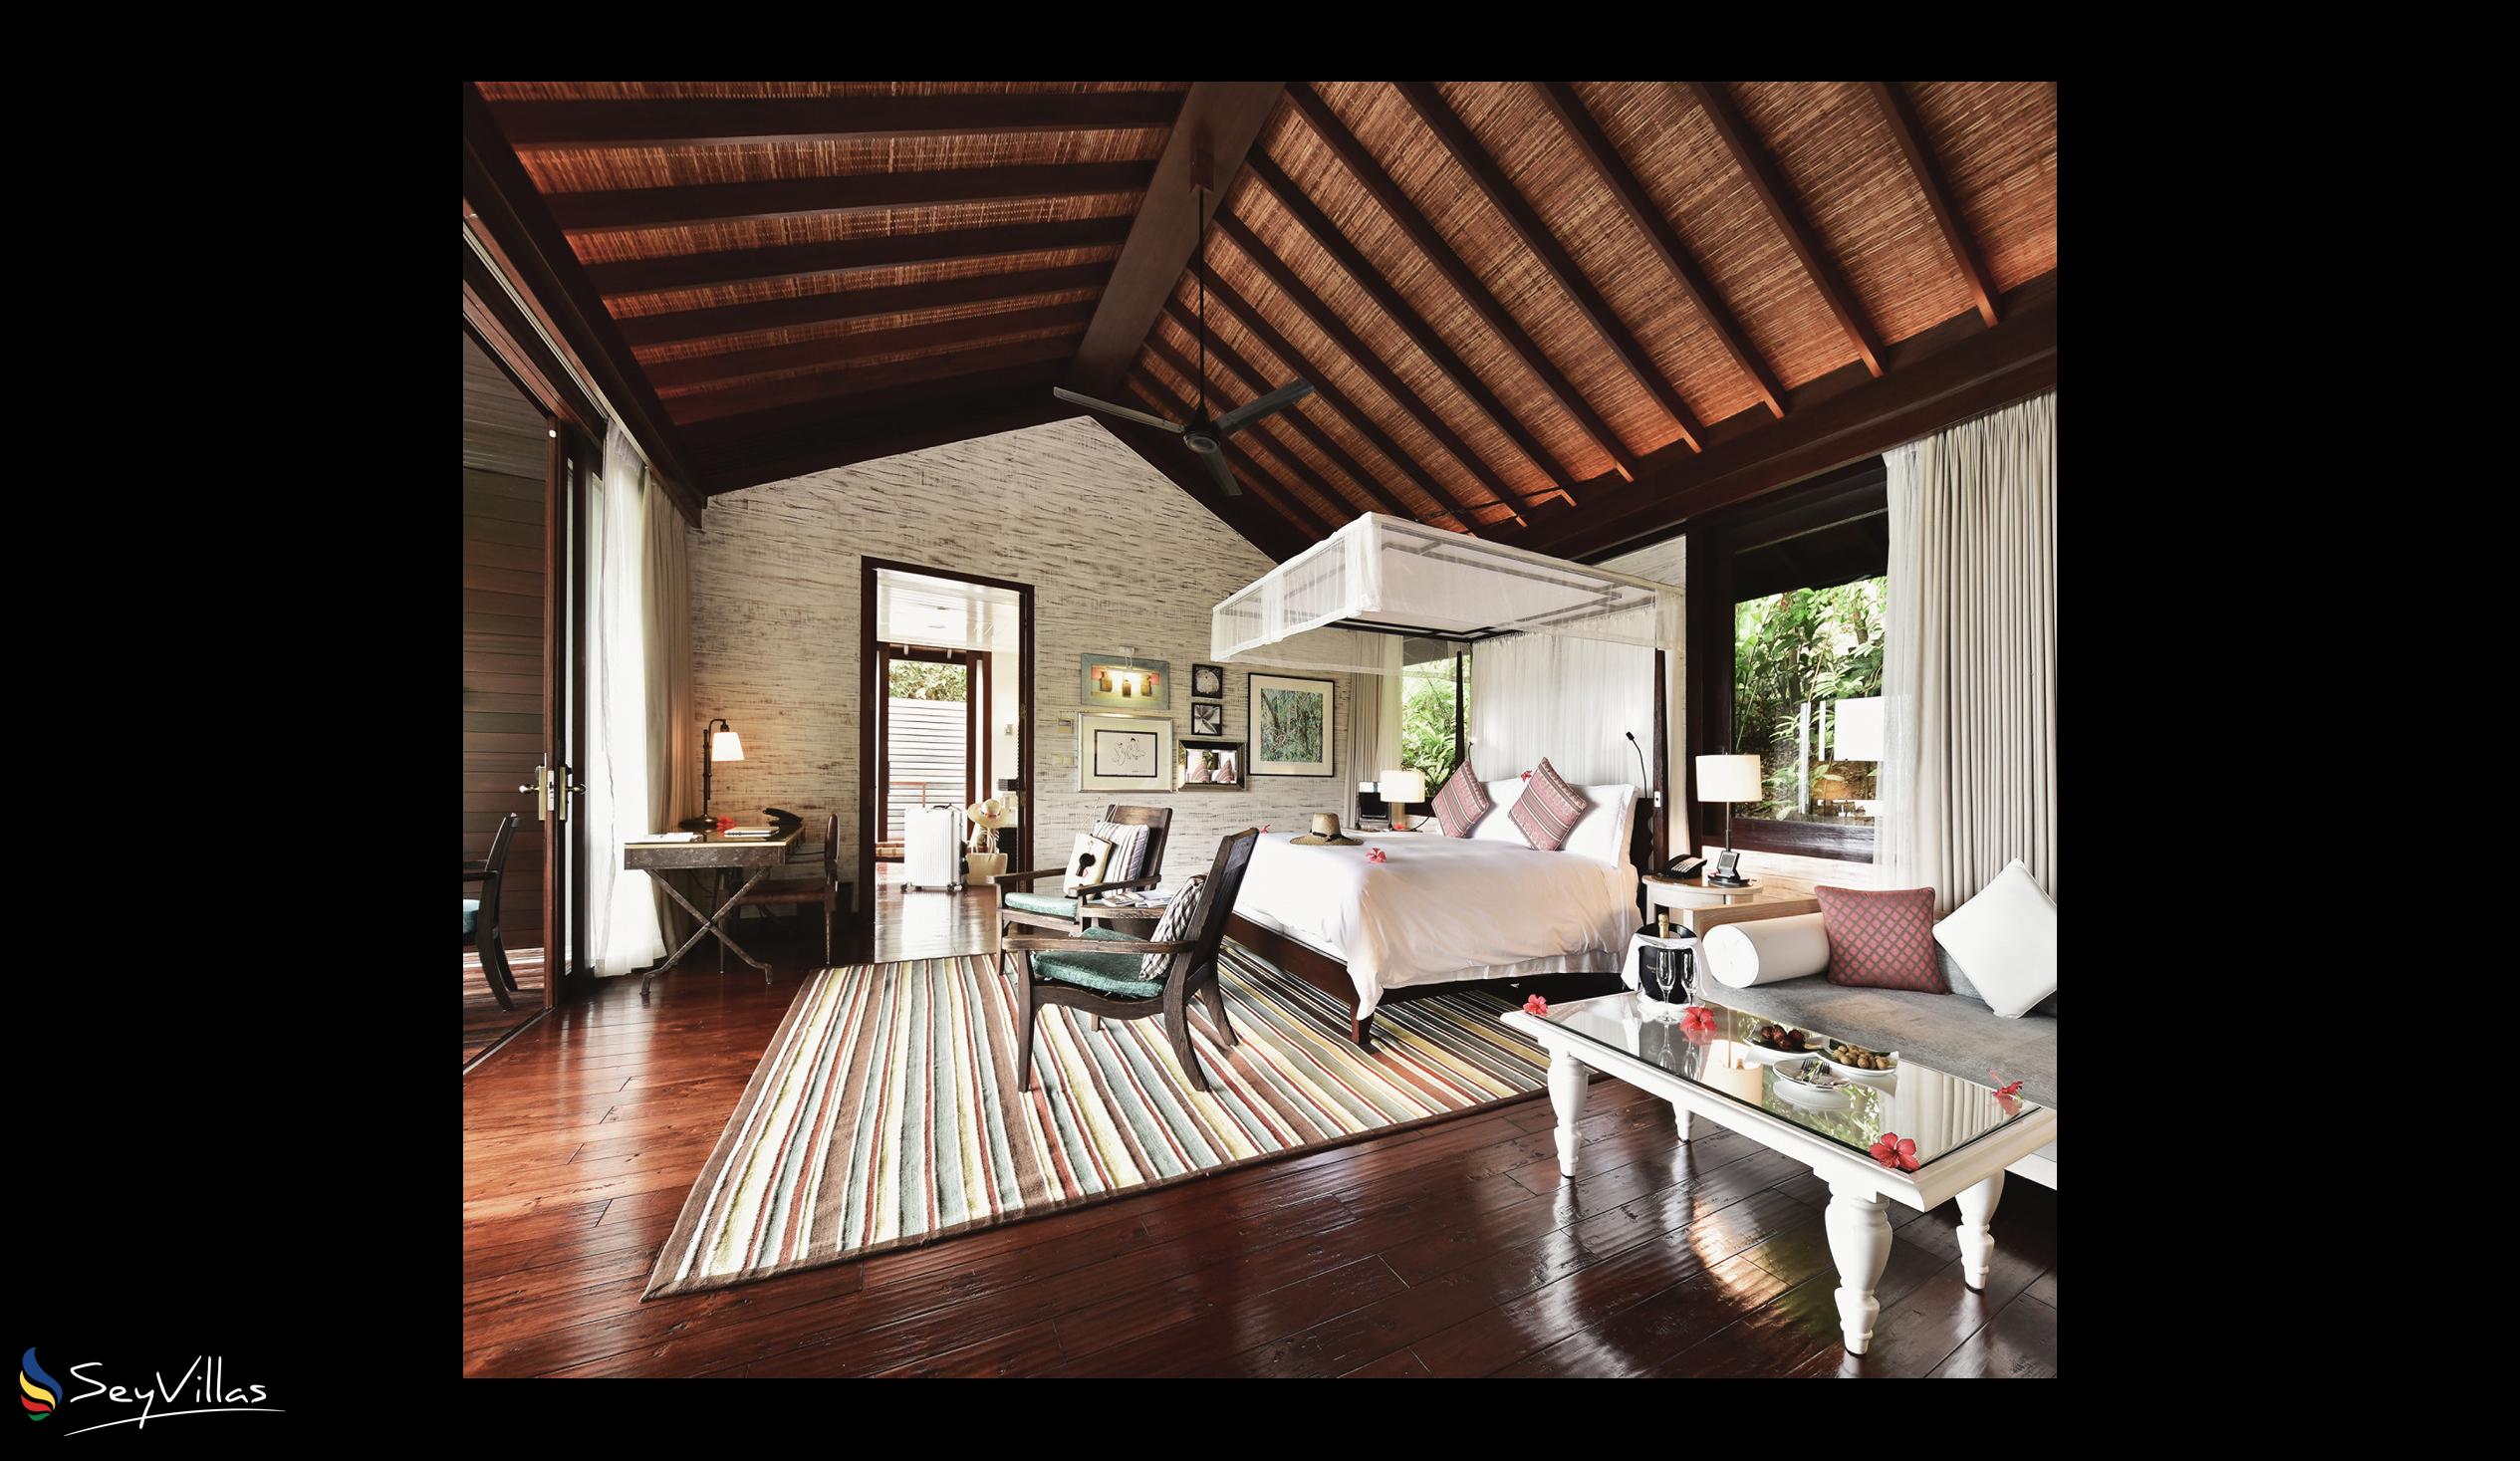 Foto 23: Four Seasons Resort - 2-Bedroom Hilltop Ocean View Suite - Mahé (Seychellen)